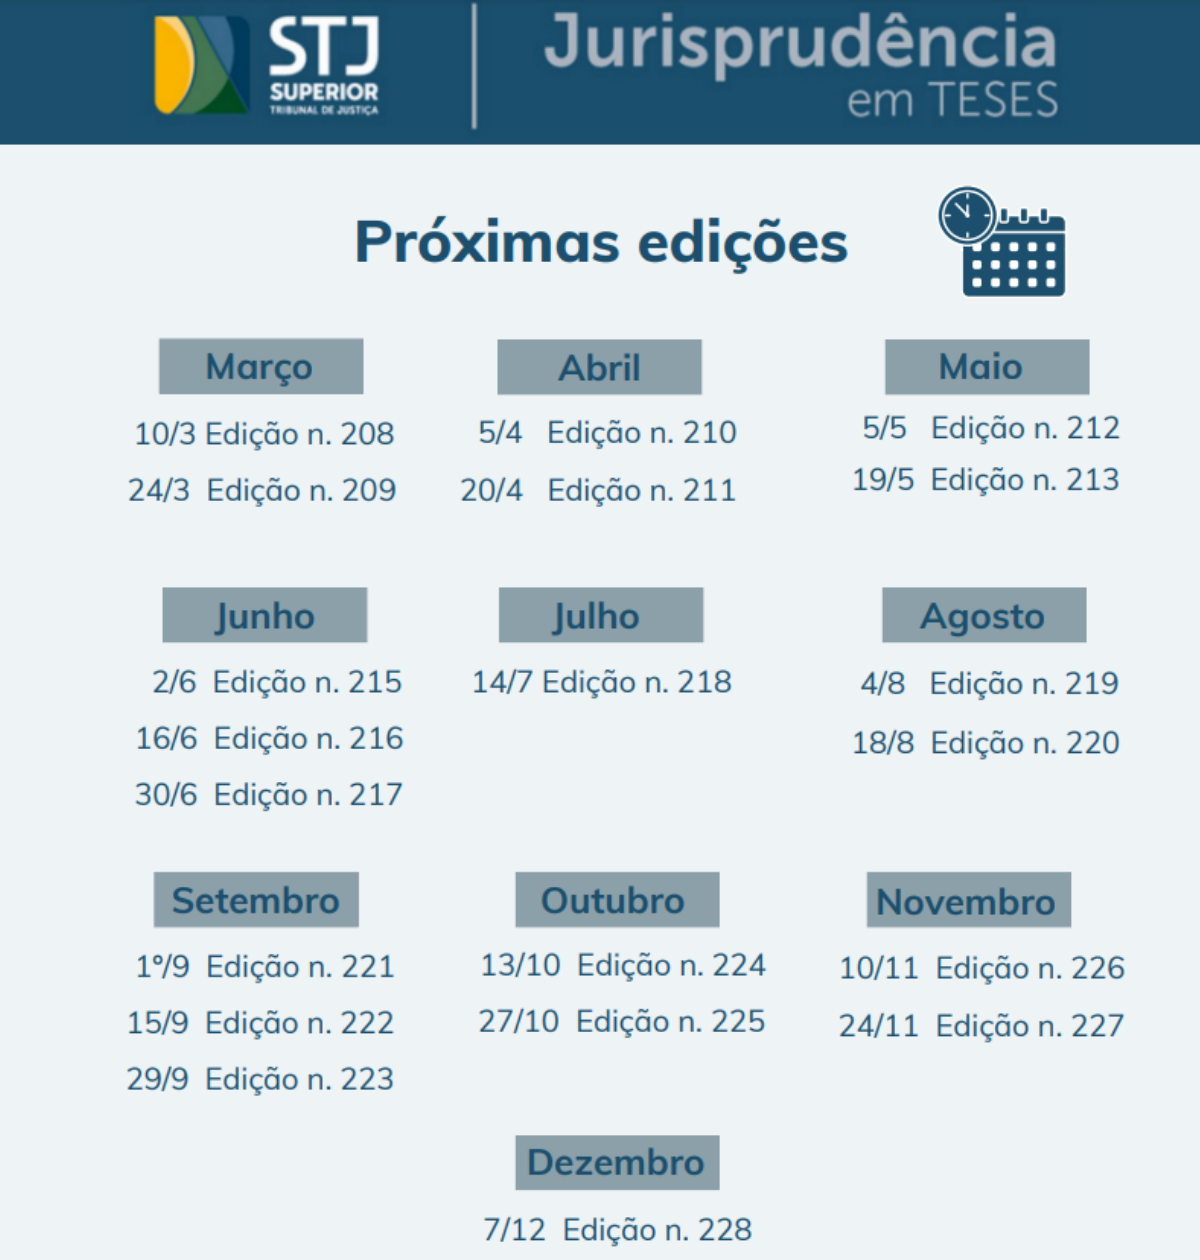 Calendário de divulgação do jurisprudência em teses do STJ